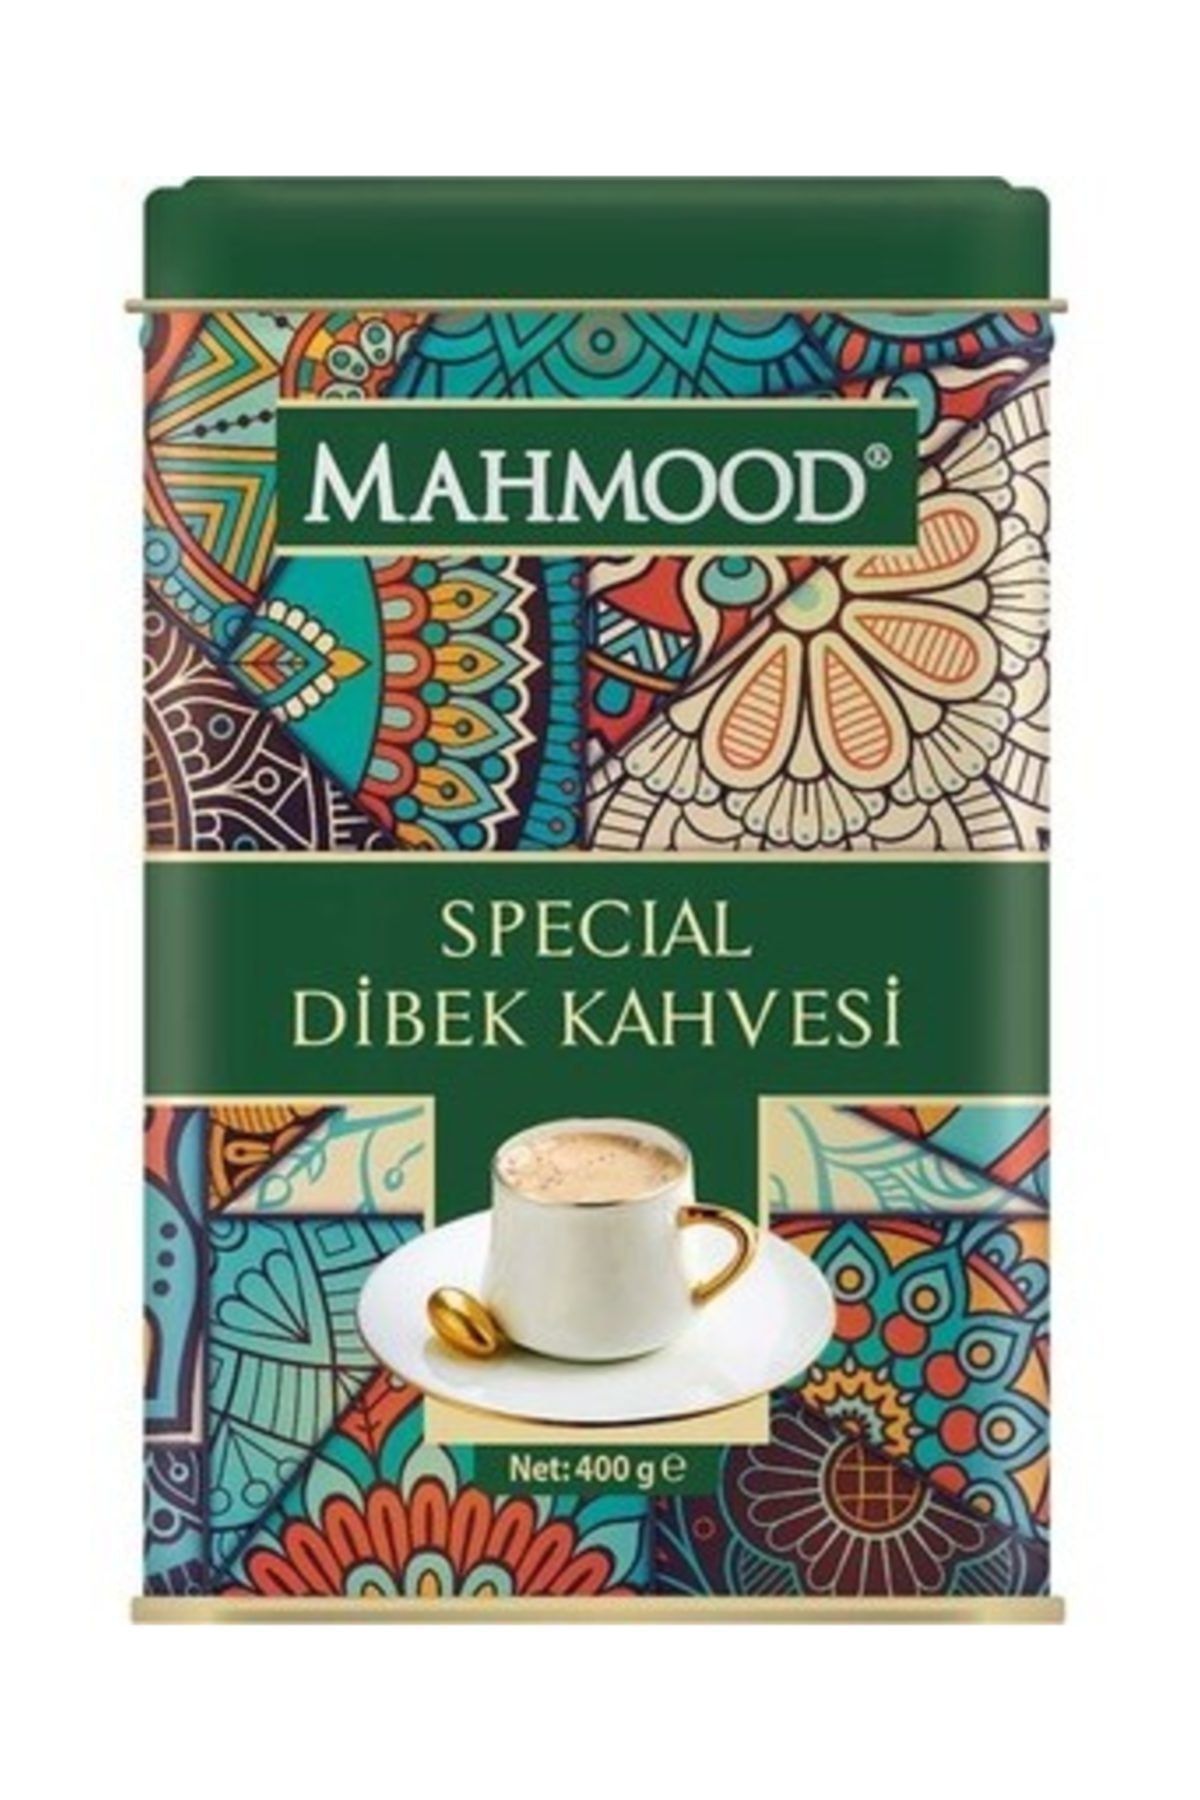 Mahmood Special Dibek Kahvesi 400 Gr  Coffee  Special Dibek Kahvesi 400gr